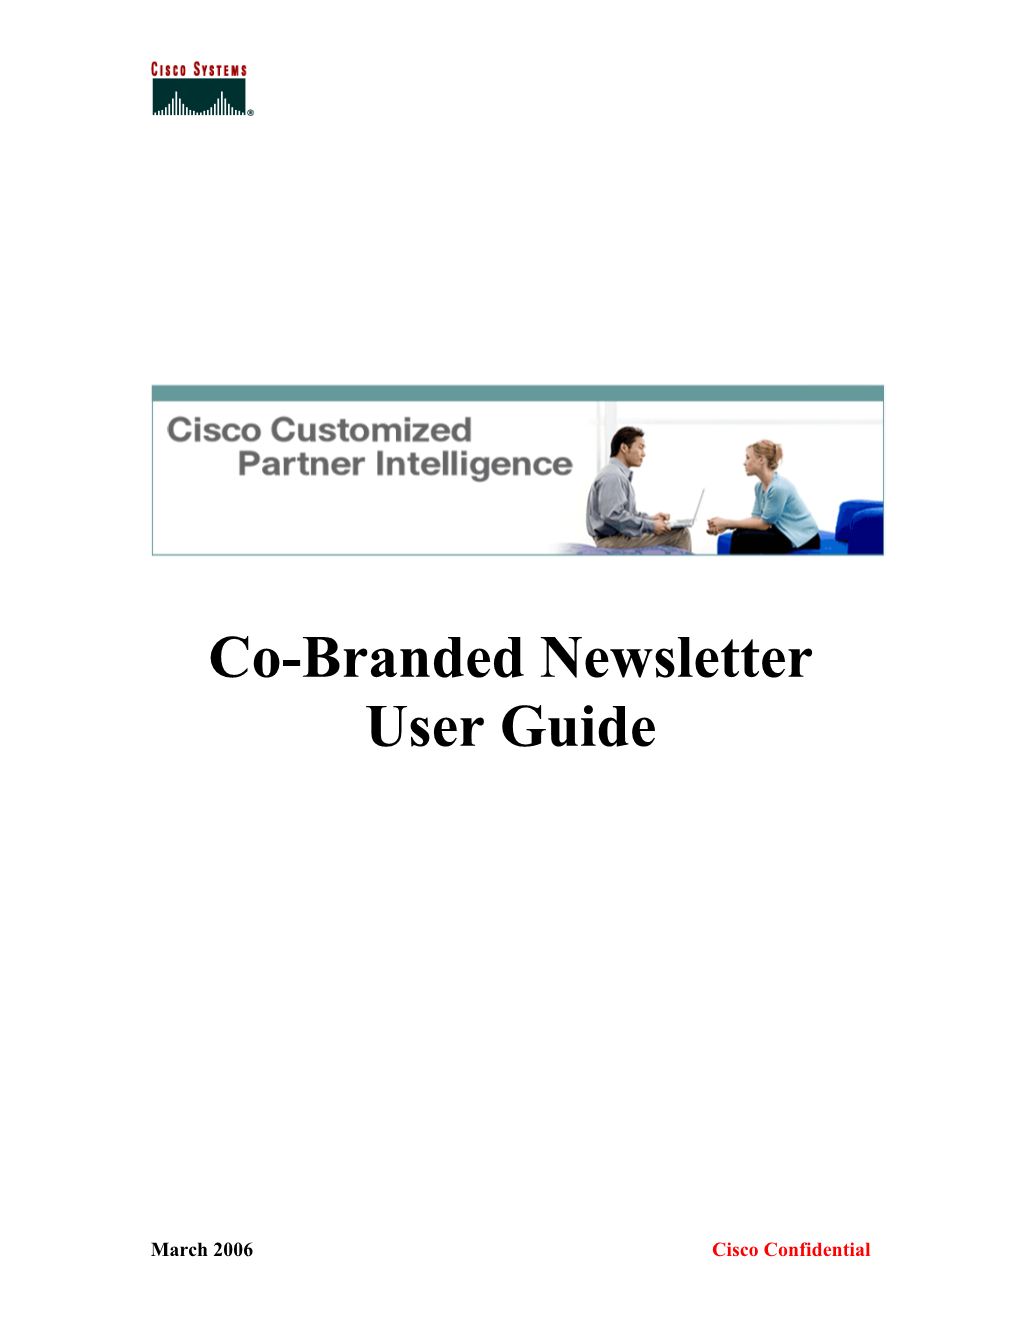 Co-Branded Newsletter User Guide